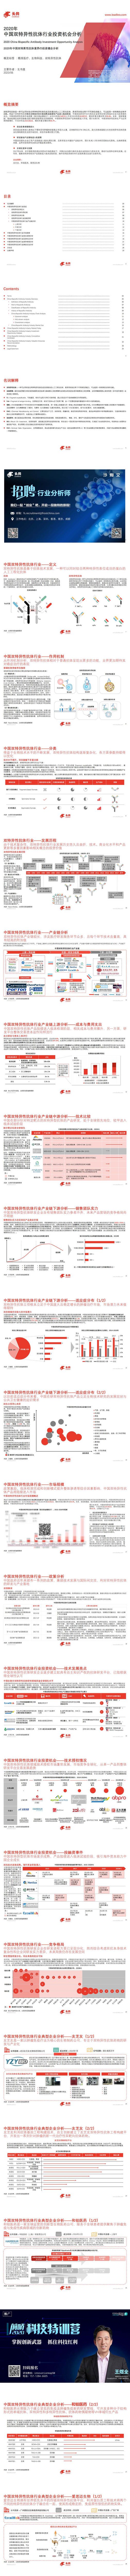 【头豹】2020年中国双特异性抗体行业投资机会分析_0.jpg